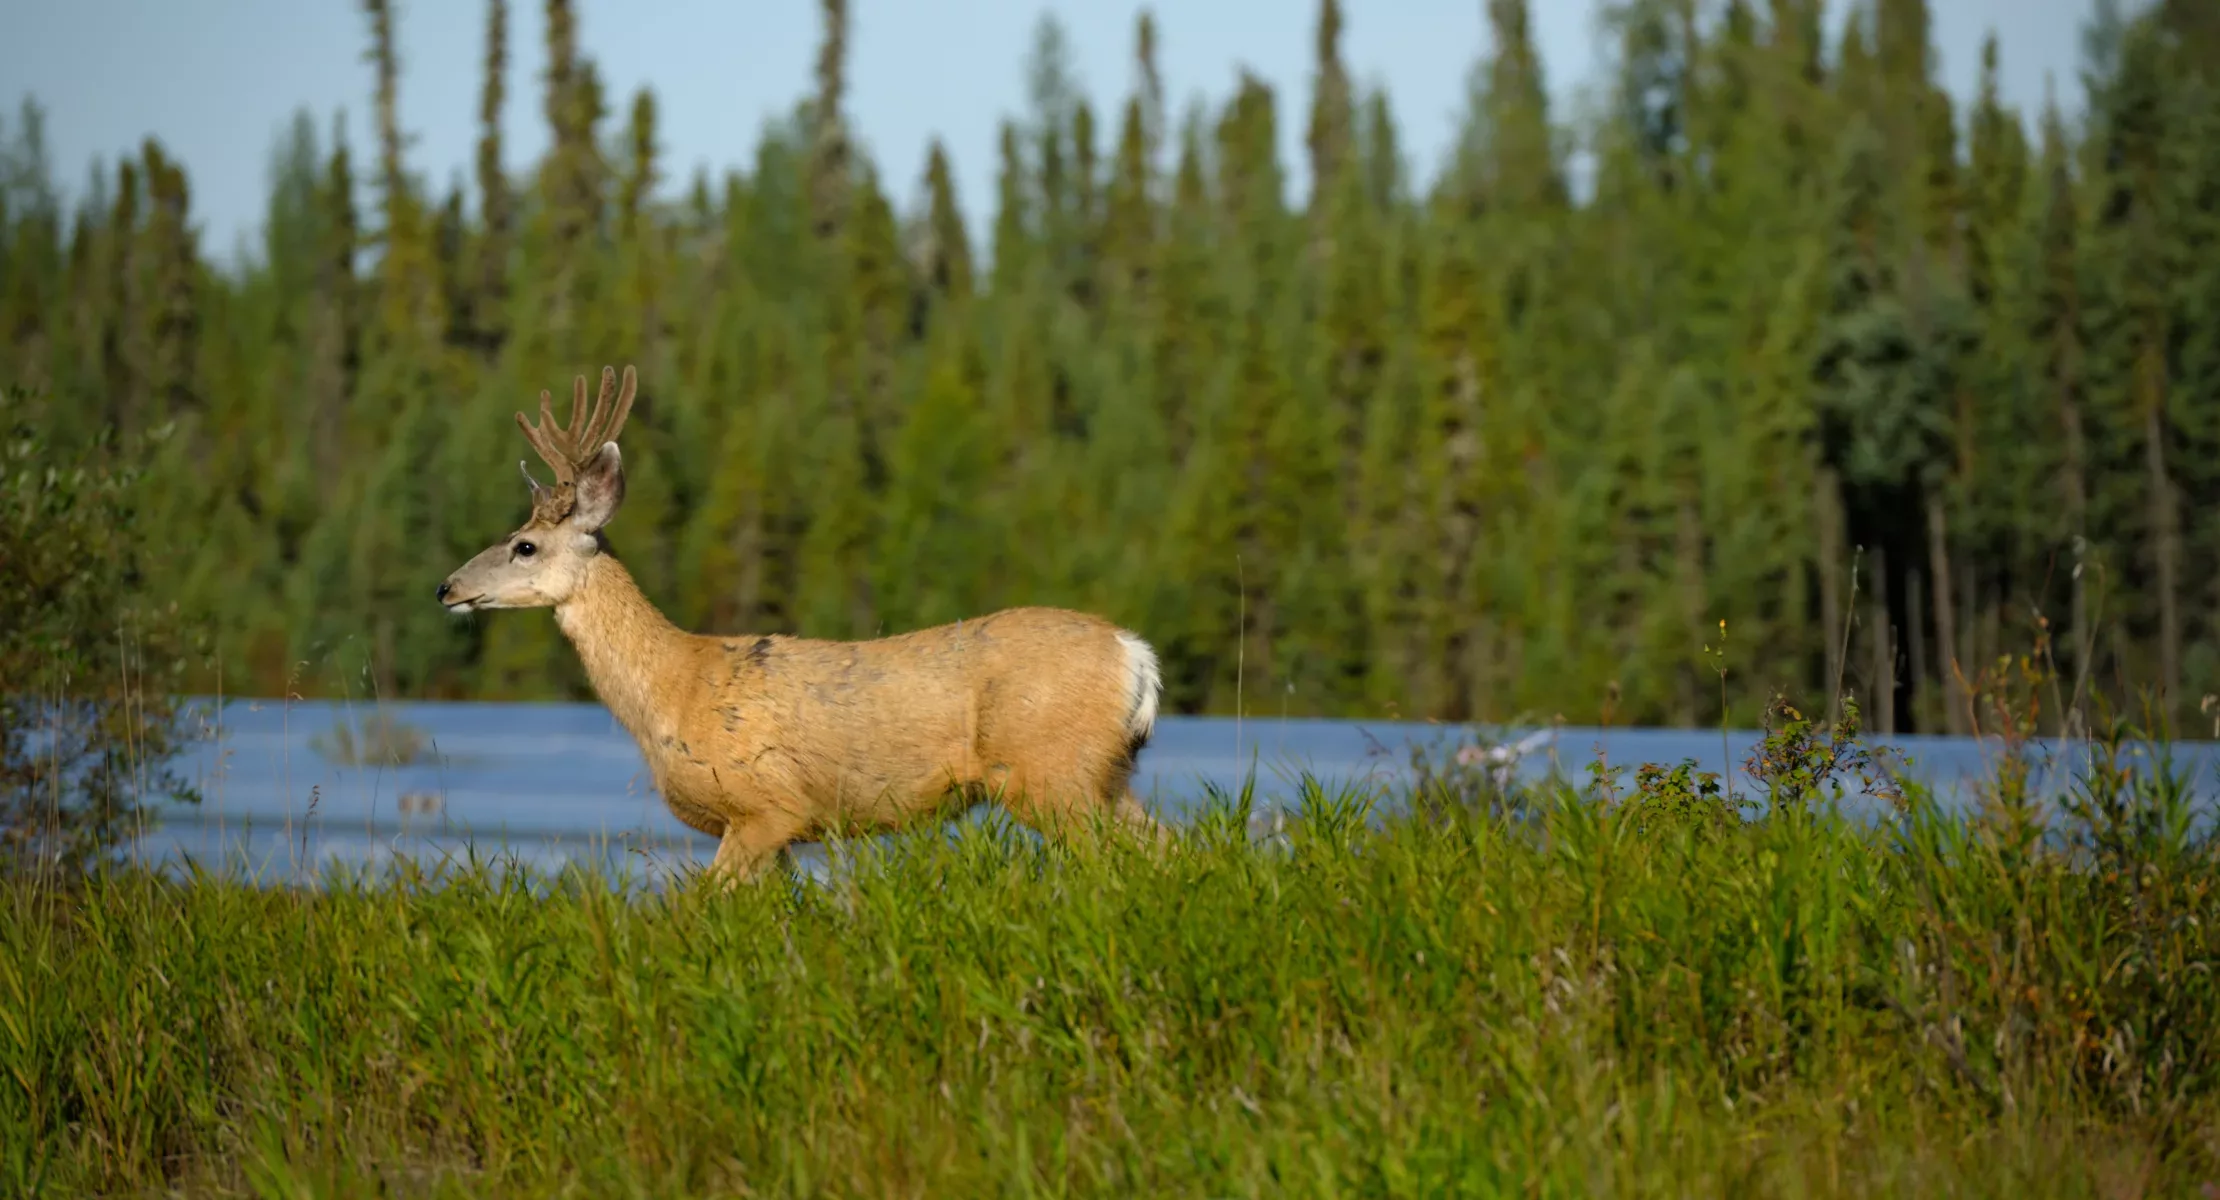 Deer walking in tall grass along a river.